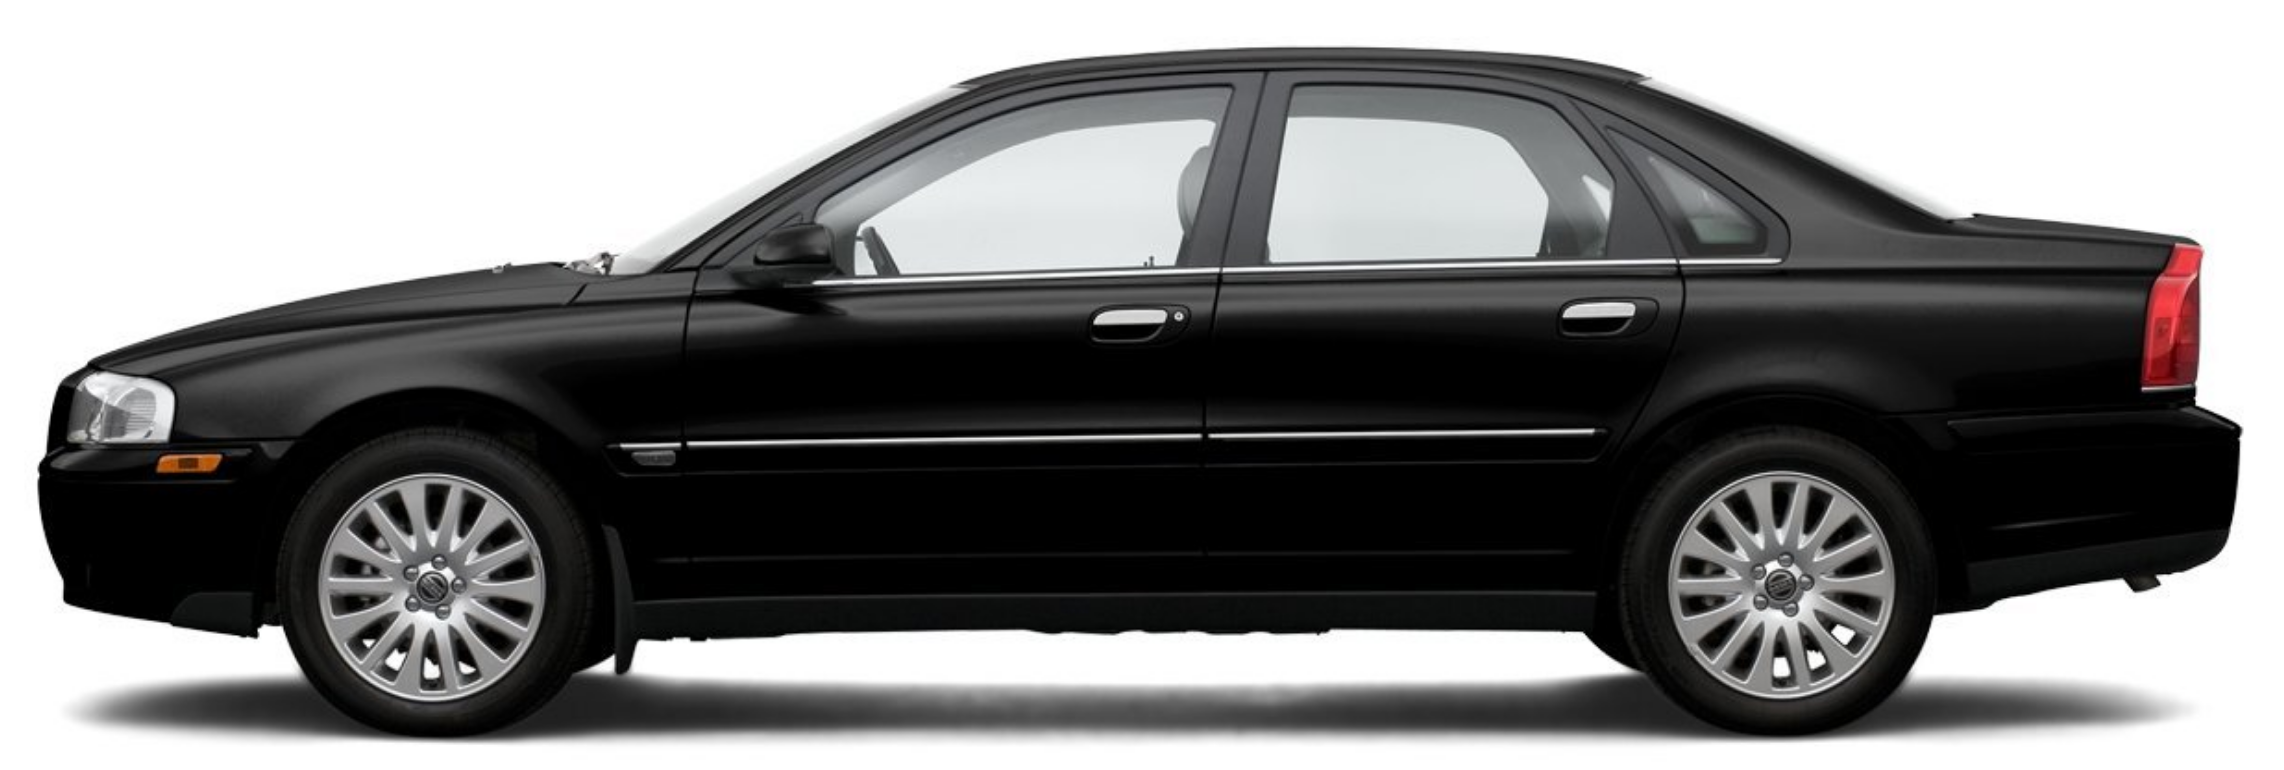 Afbeelding van ZHNT98, zwarte Volvo S80 2.4 125 Kw Aut. sedan